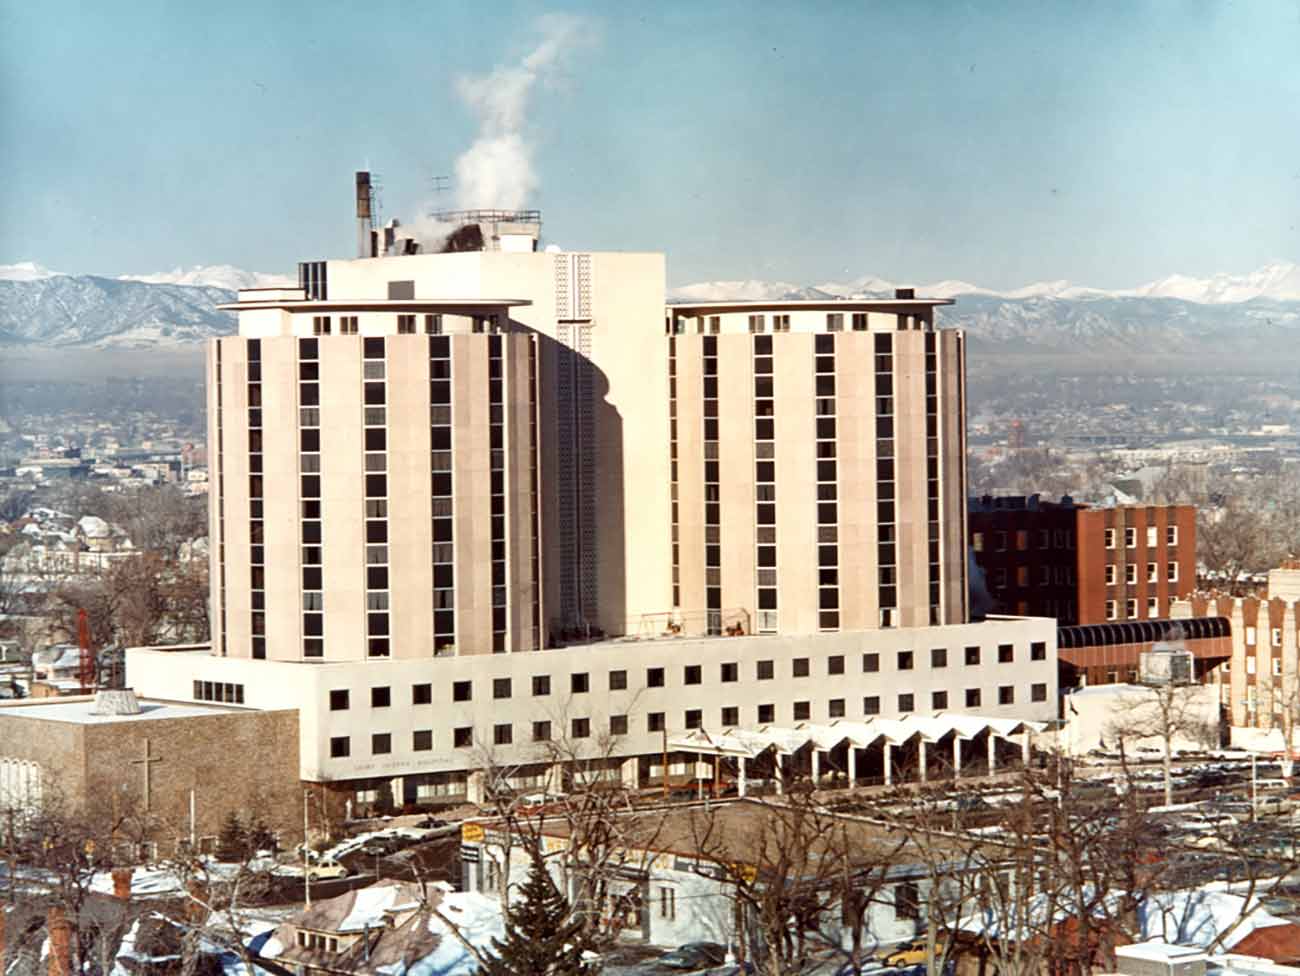 Saint Joseph Hospital, Denver, circa 1970